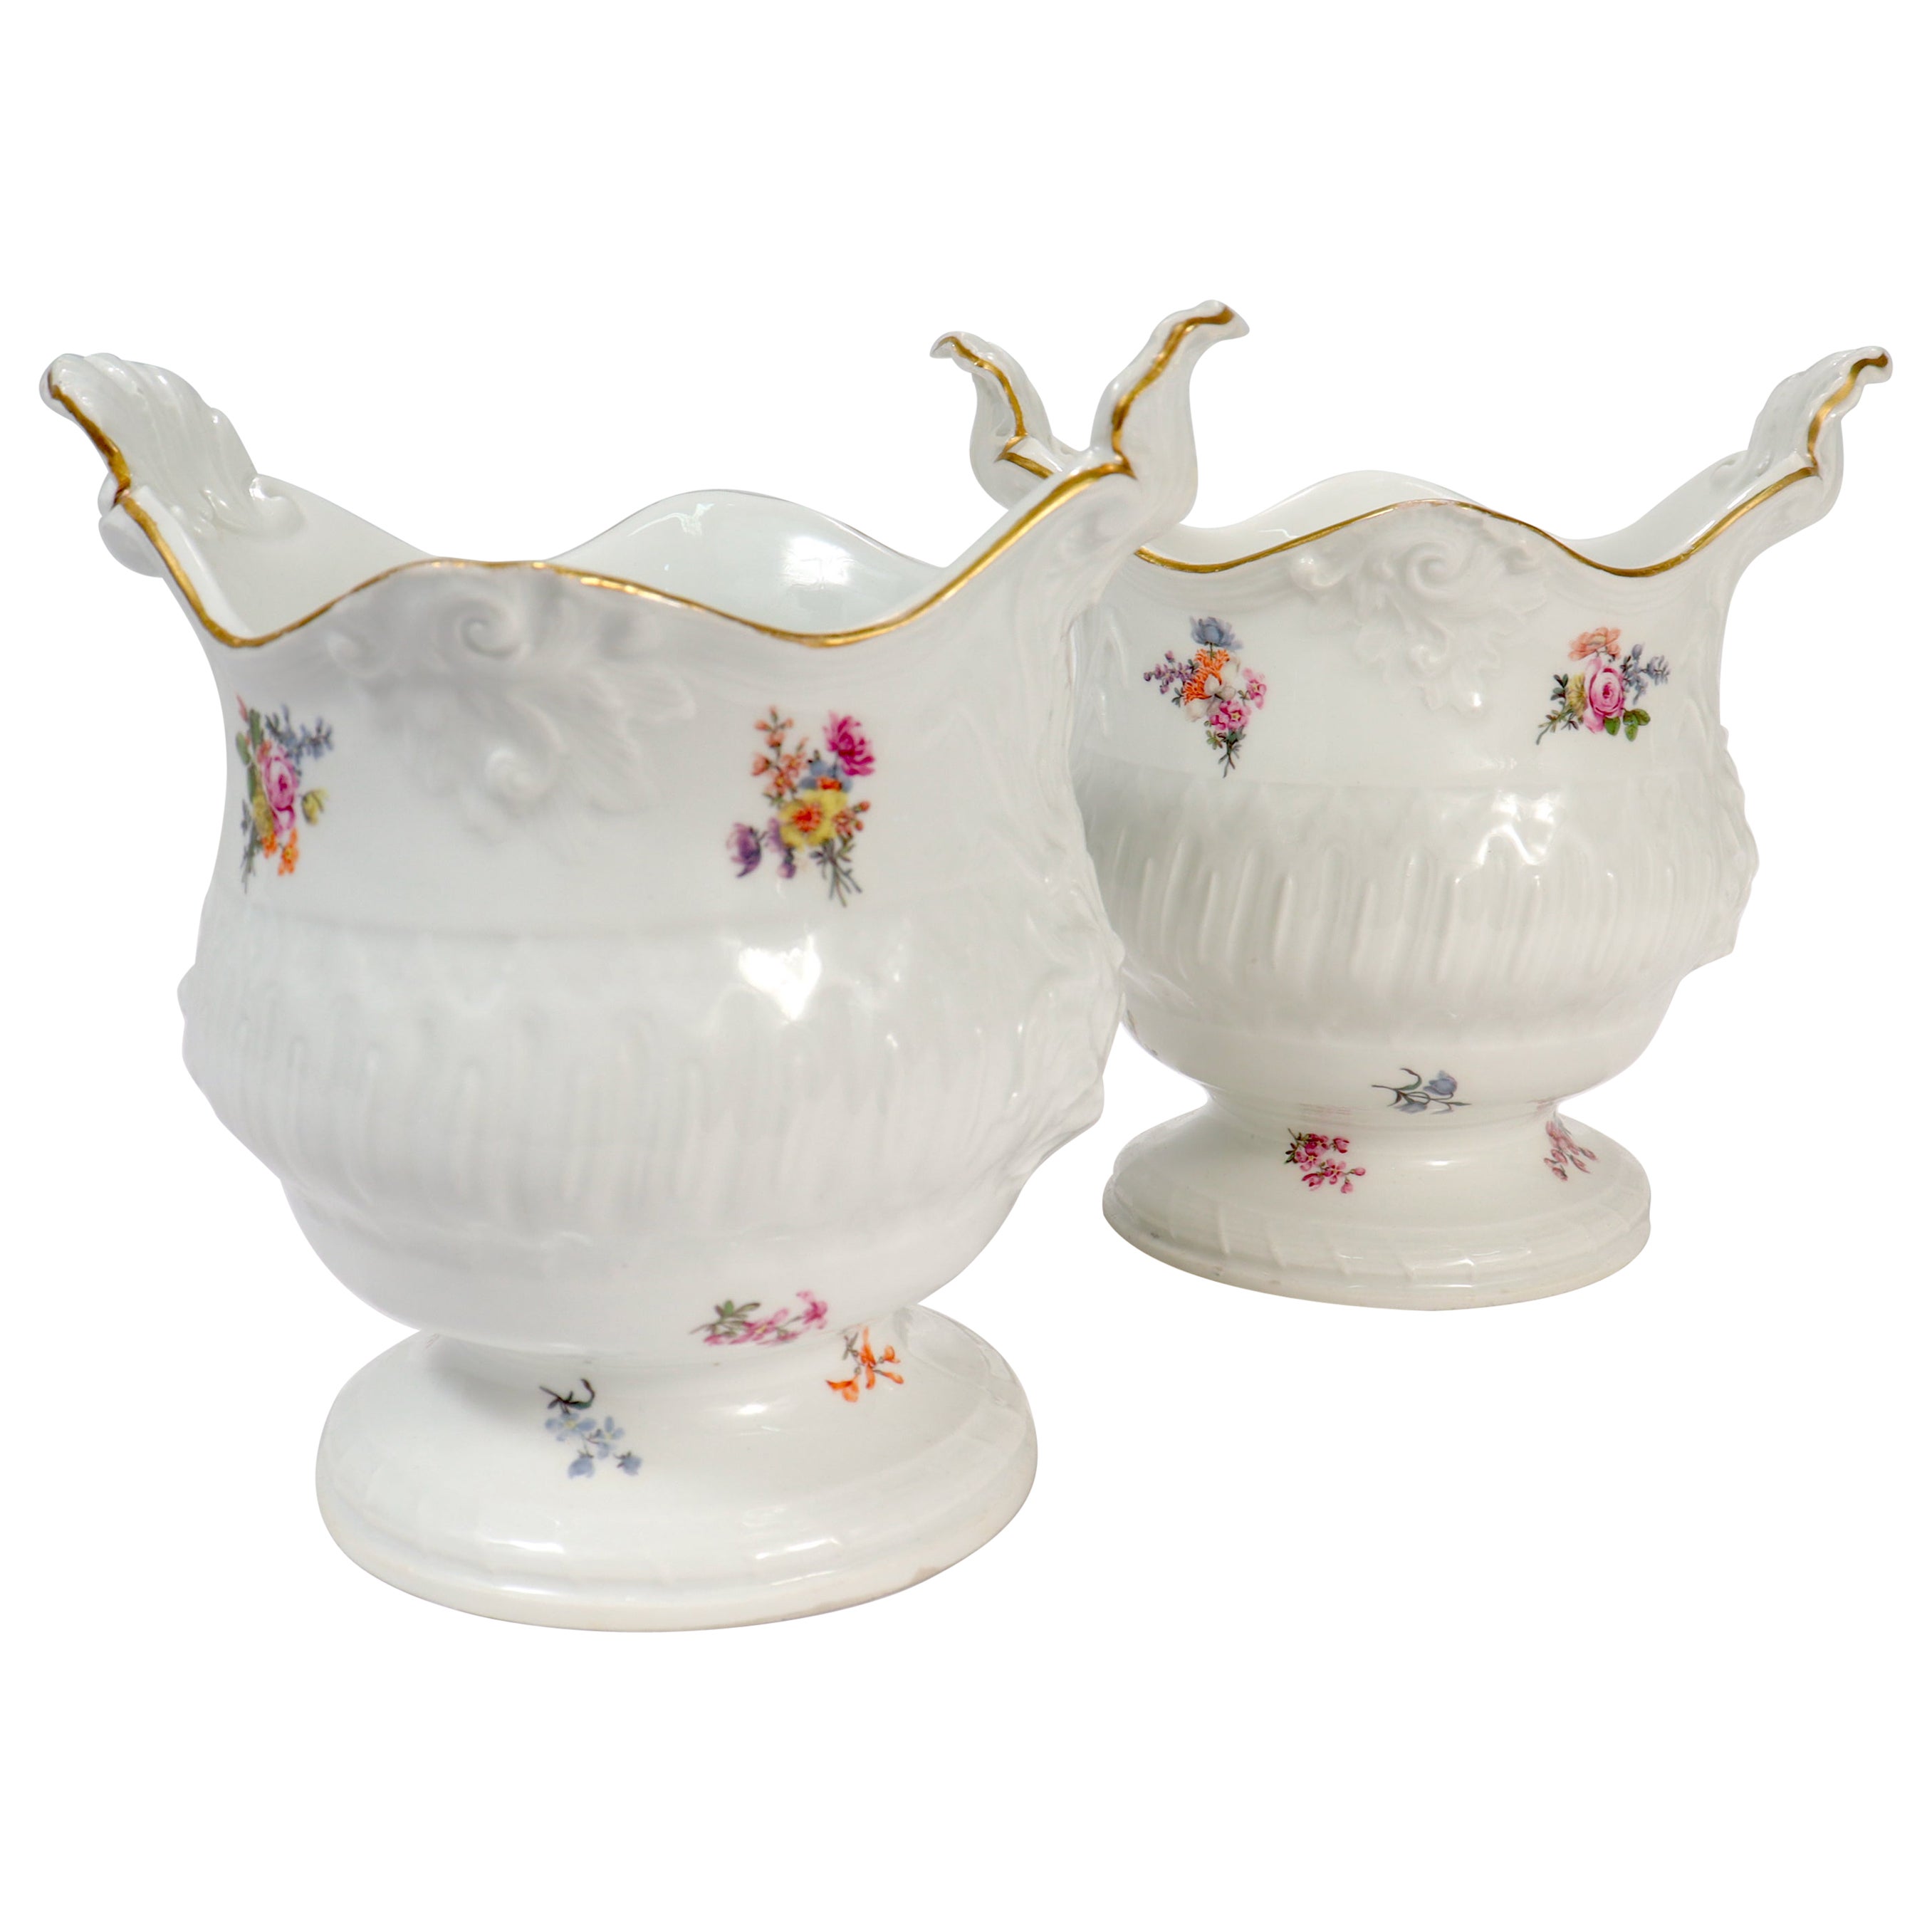 Pair of Antique 18th / 19th Century Meissen Porcelain Cachepots or Flower Pots For Sale